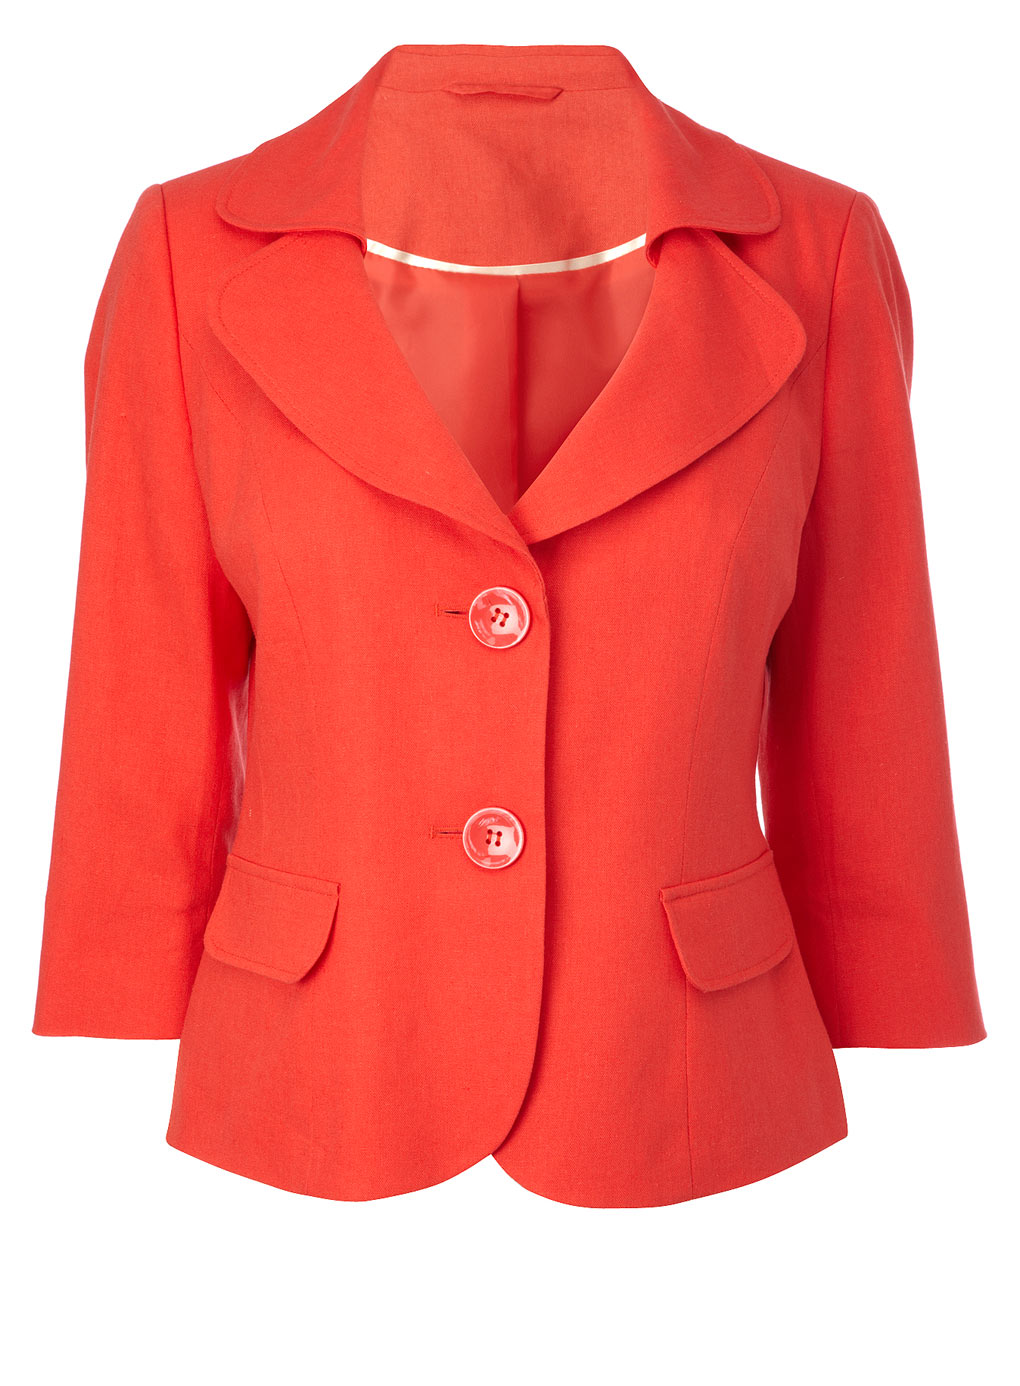 Stylish Orange Coat | Here Everythink Is Stylish